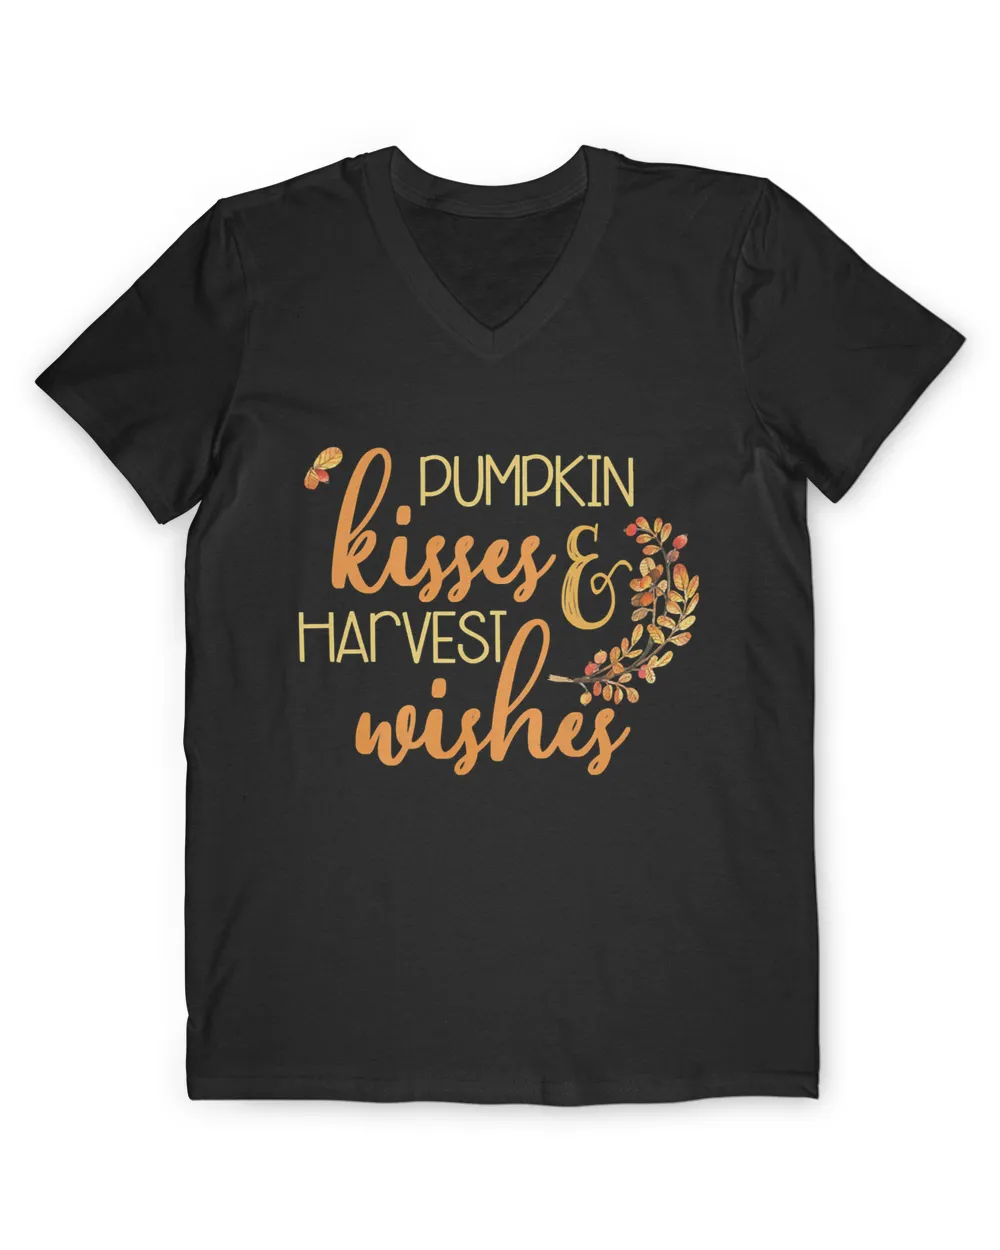 Womens Pumpkin Kisses & Harvest Wishes Cute Love Fall Season Autumn Premium T-Shirt